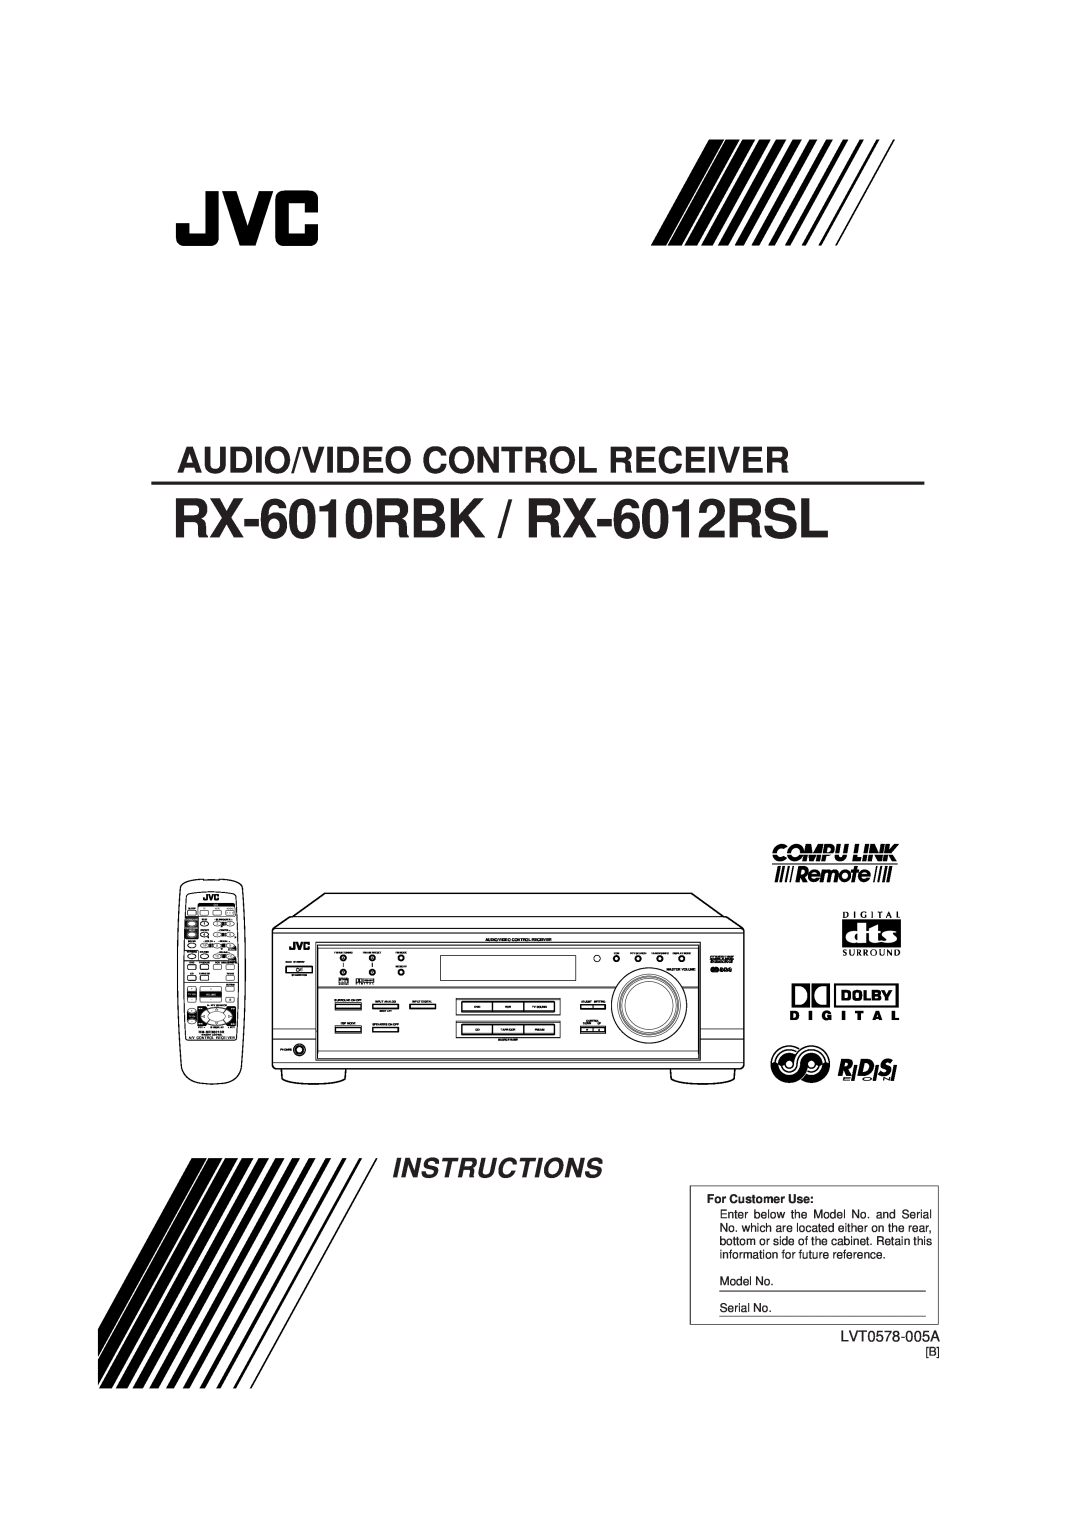 JVC manual RX-6010RBK / RX-6012RSL, Audio/Video Control Receiver, Instructions, LVT0578-005A, D I G I T A L, 7/P, 5MENU 